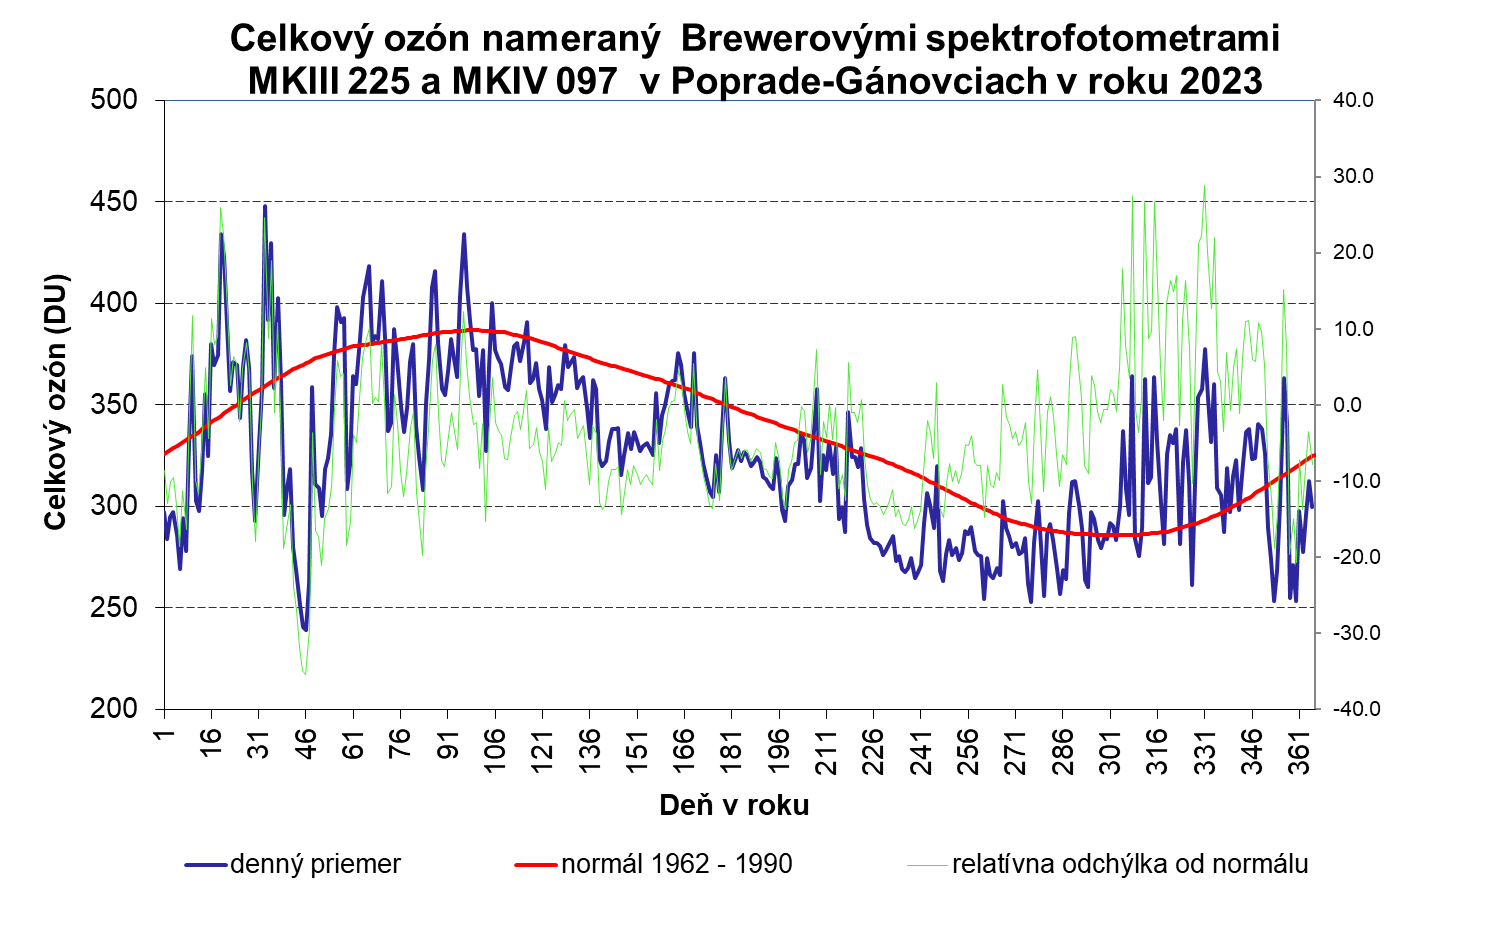 Obrázok  3. Denné priemery celkového ozónu (modrá čiara) v DU, jeho odchýlky od normálu 1962 – 1990 (zelená čiara) v roku 2022 a normálové hodnoty (červená čiara). 